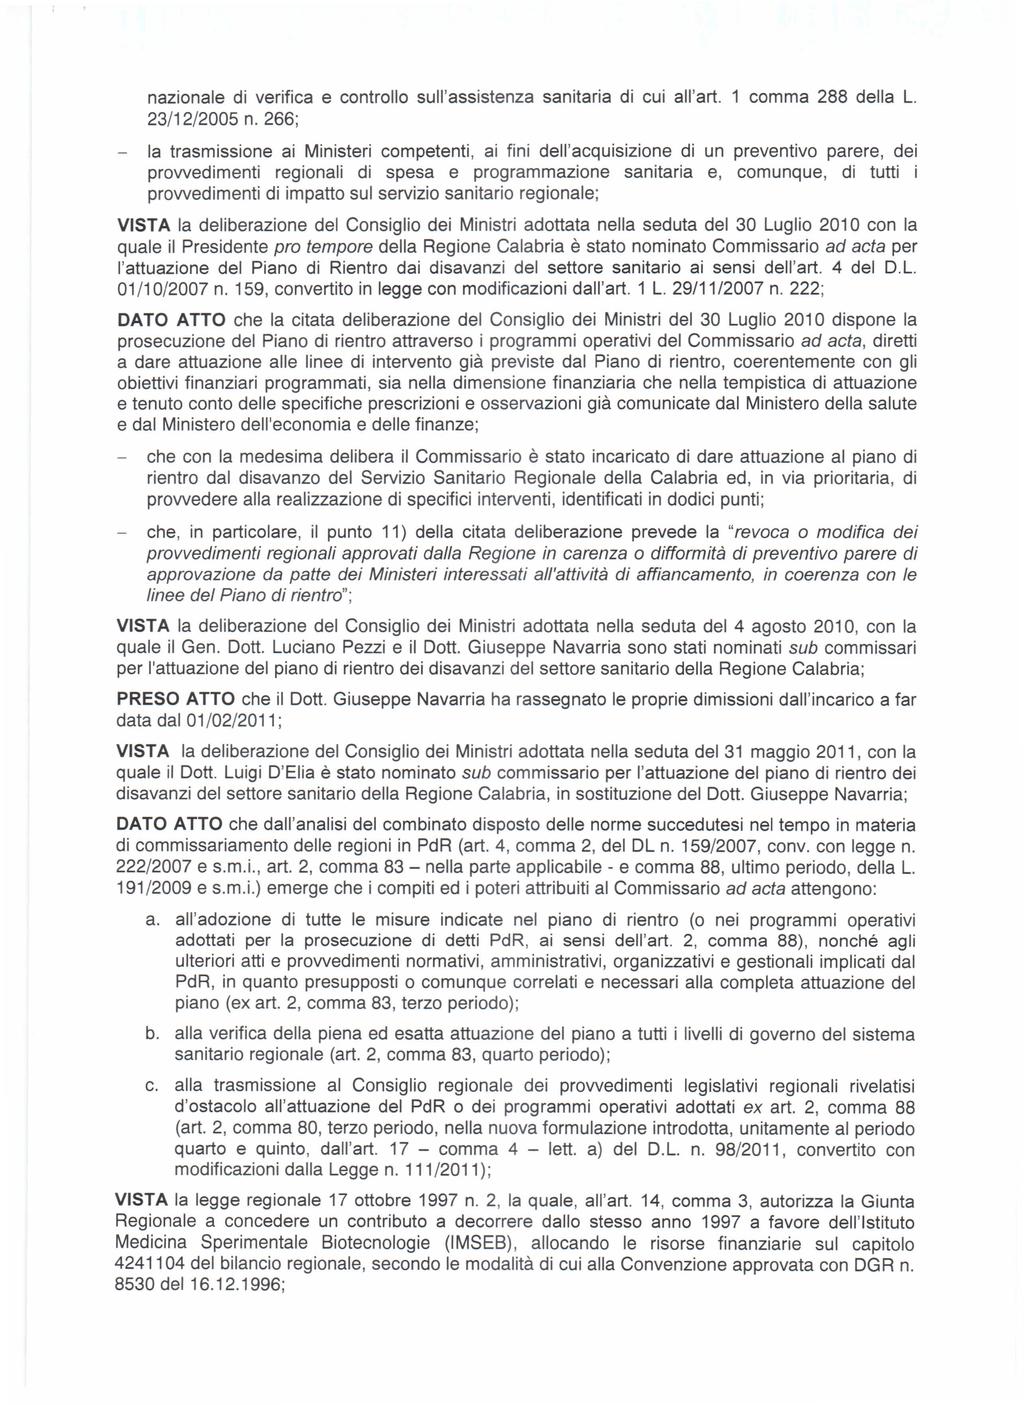 nazionale di verifica e controllo sull'assistenza sanitaria di cui all'art. 1 comma 288 della L. 23/12/2005 n.